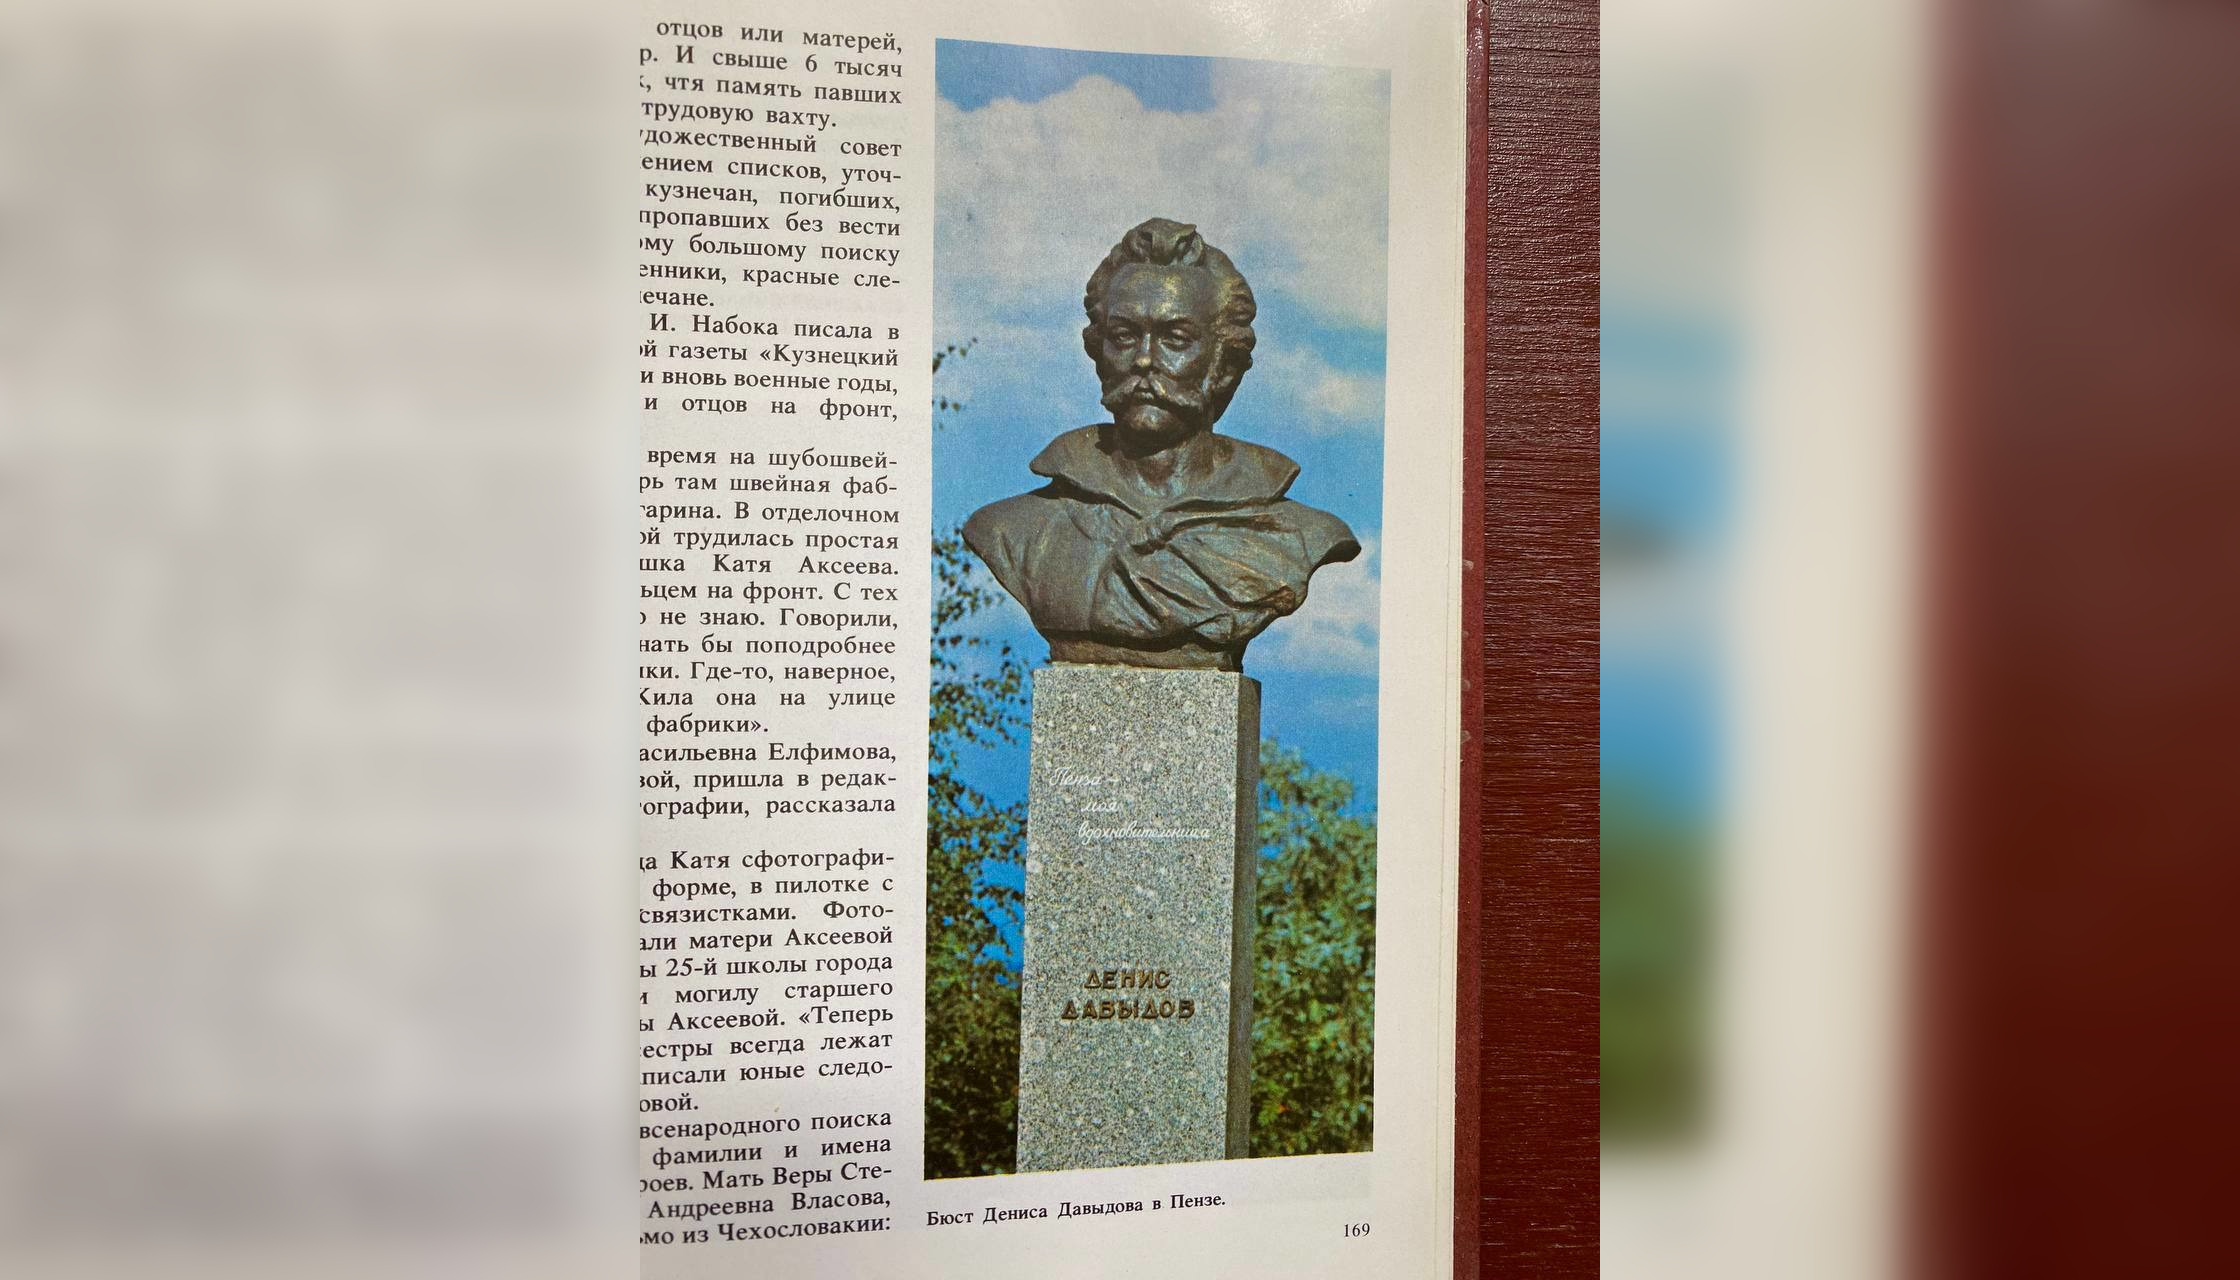 Олег Мельниченко рассказал об истории создания памятника Давыдову